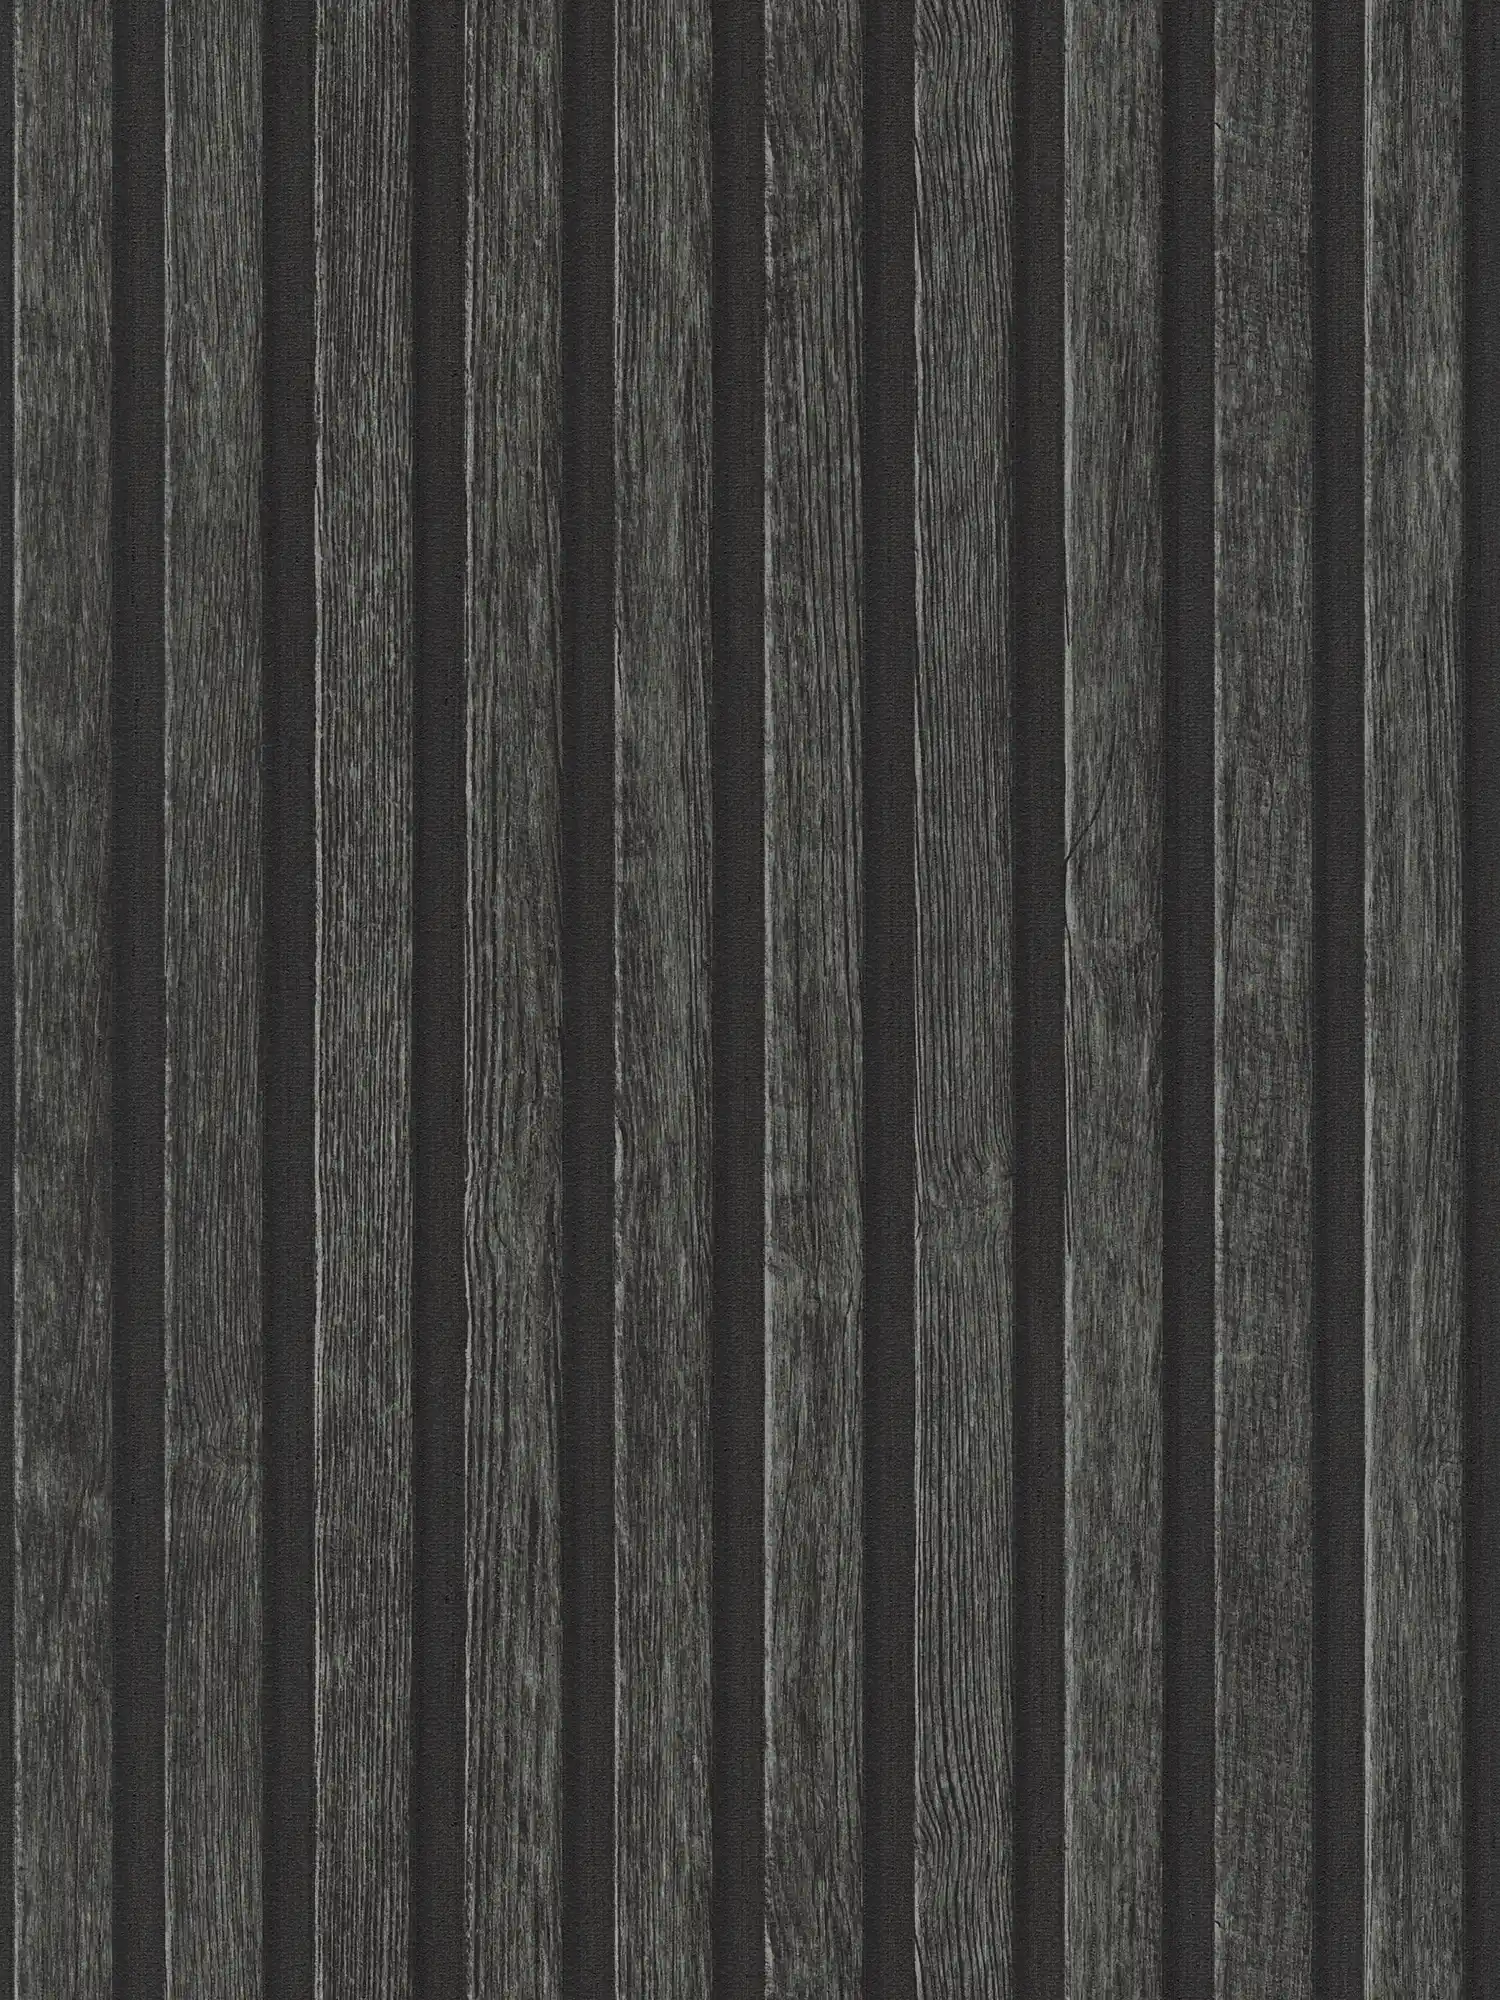         Tapete Holzoptik mit Paneel-Muster – Schwarz, Braun
    